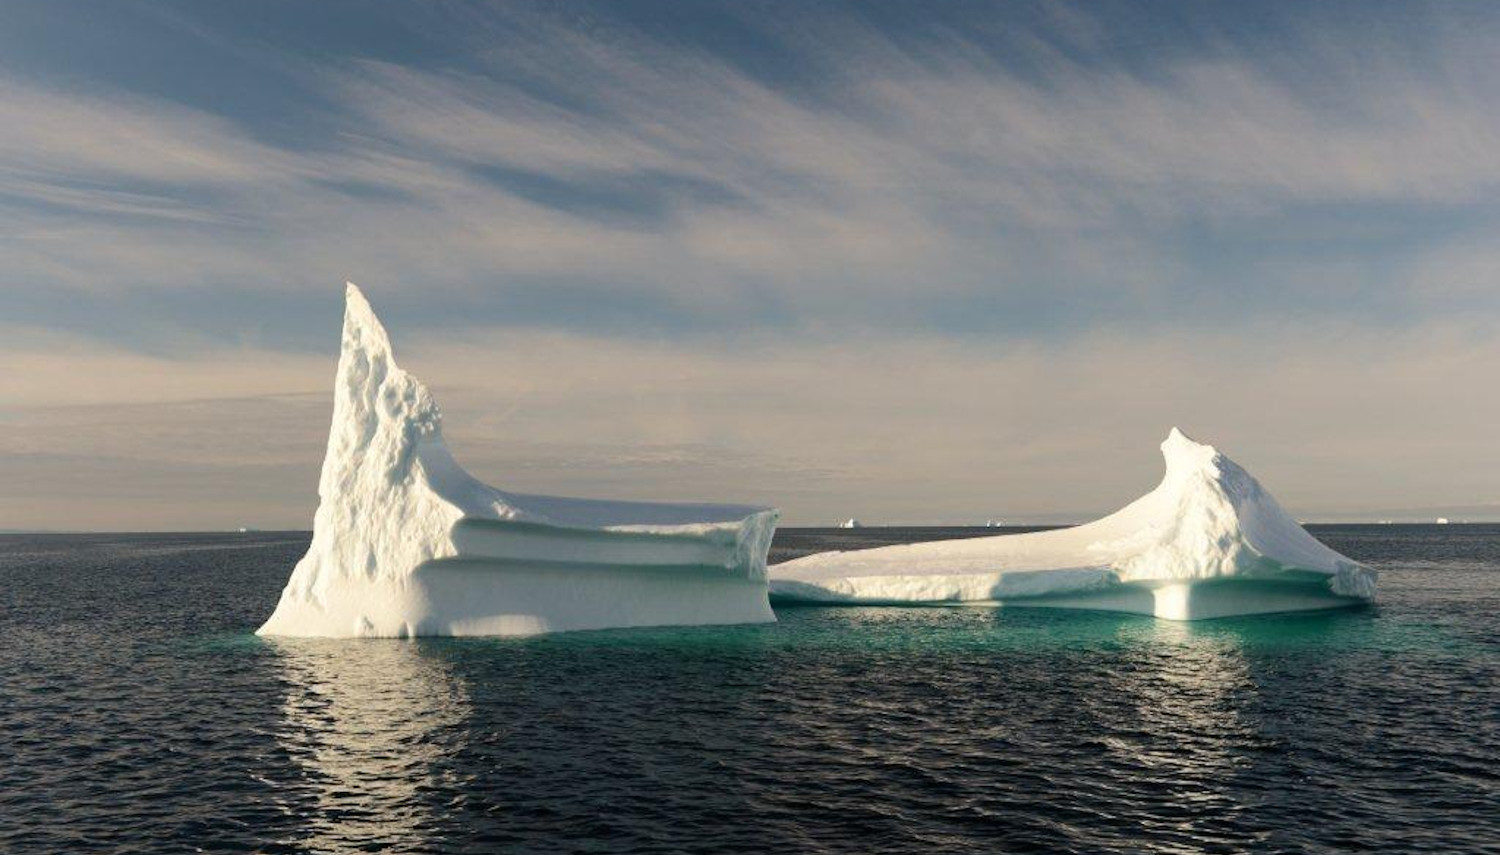 Vripack - Beothuk - Crossing the Northwest Passage - Journey - Iceberg - Nature photography